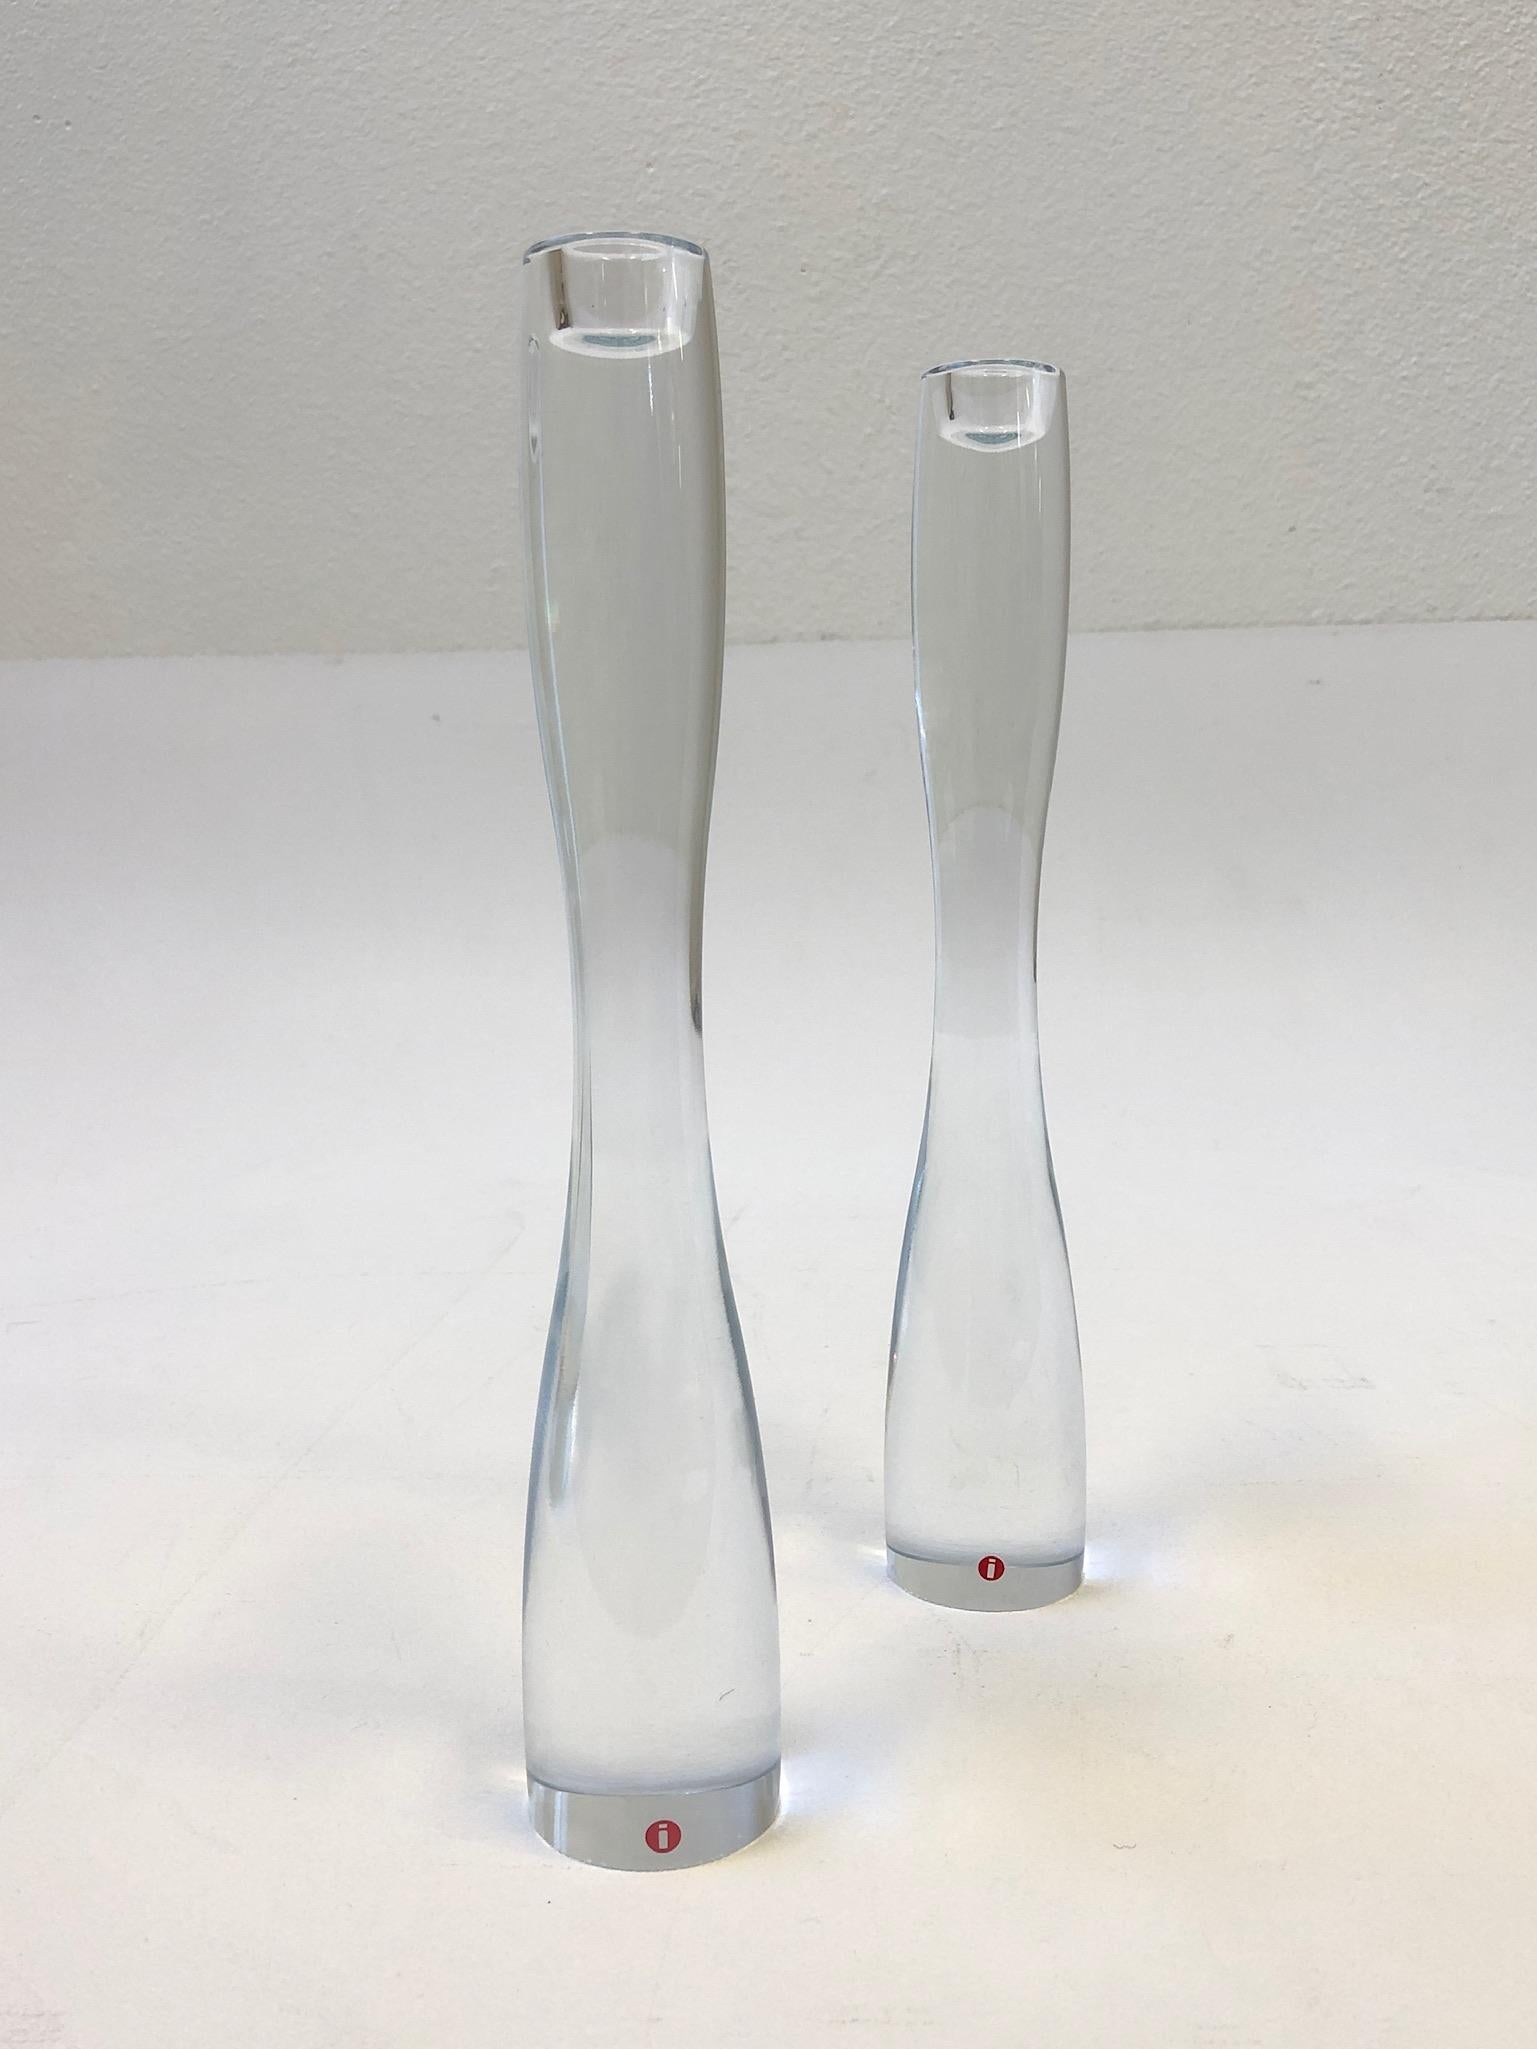 Ein schönes Paar finnischer Kristallkerzenhalter, entworfen von Timo Sarpaneva für Iittala im Jahr 1994. Beide Kerzenhalter sind signiert und datiert und tragen das Iittala-Etikett (siehe Detailfotos).

Abmessungen: 12